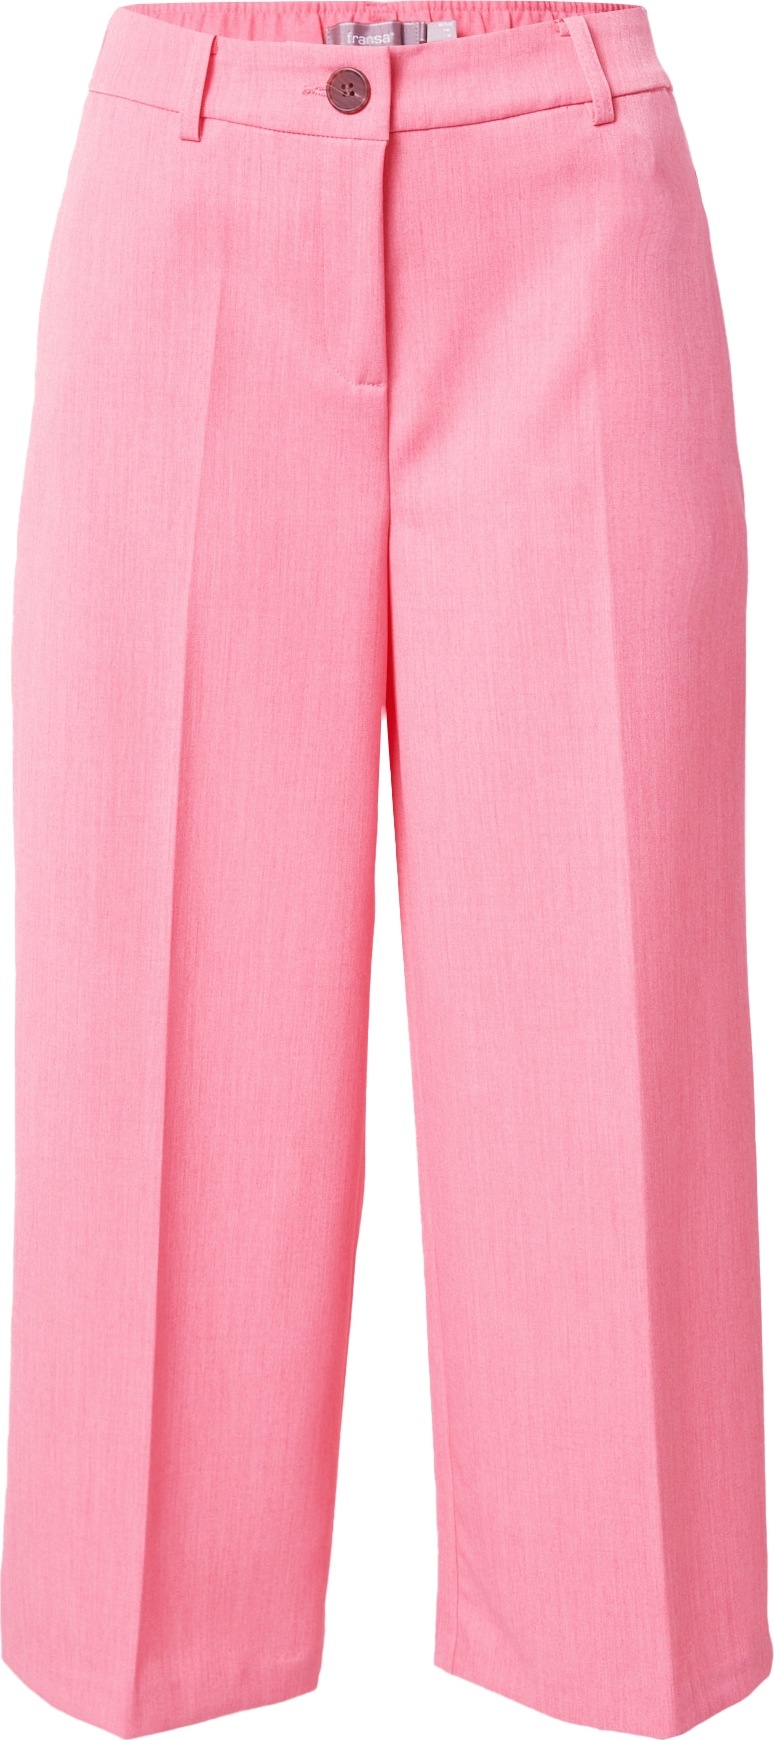 Kalhoty s puky 'MILENA' Fransa pink